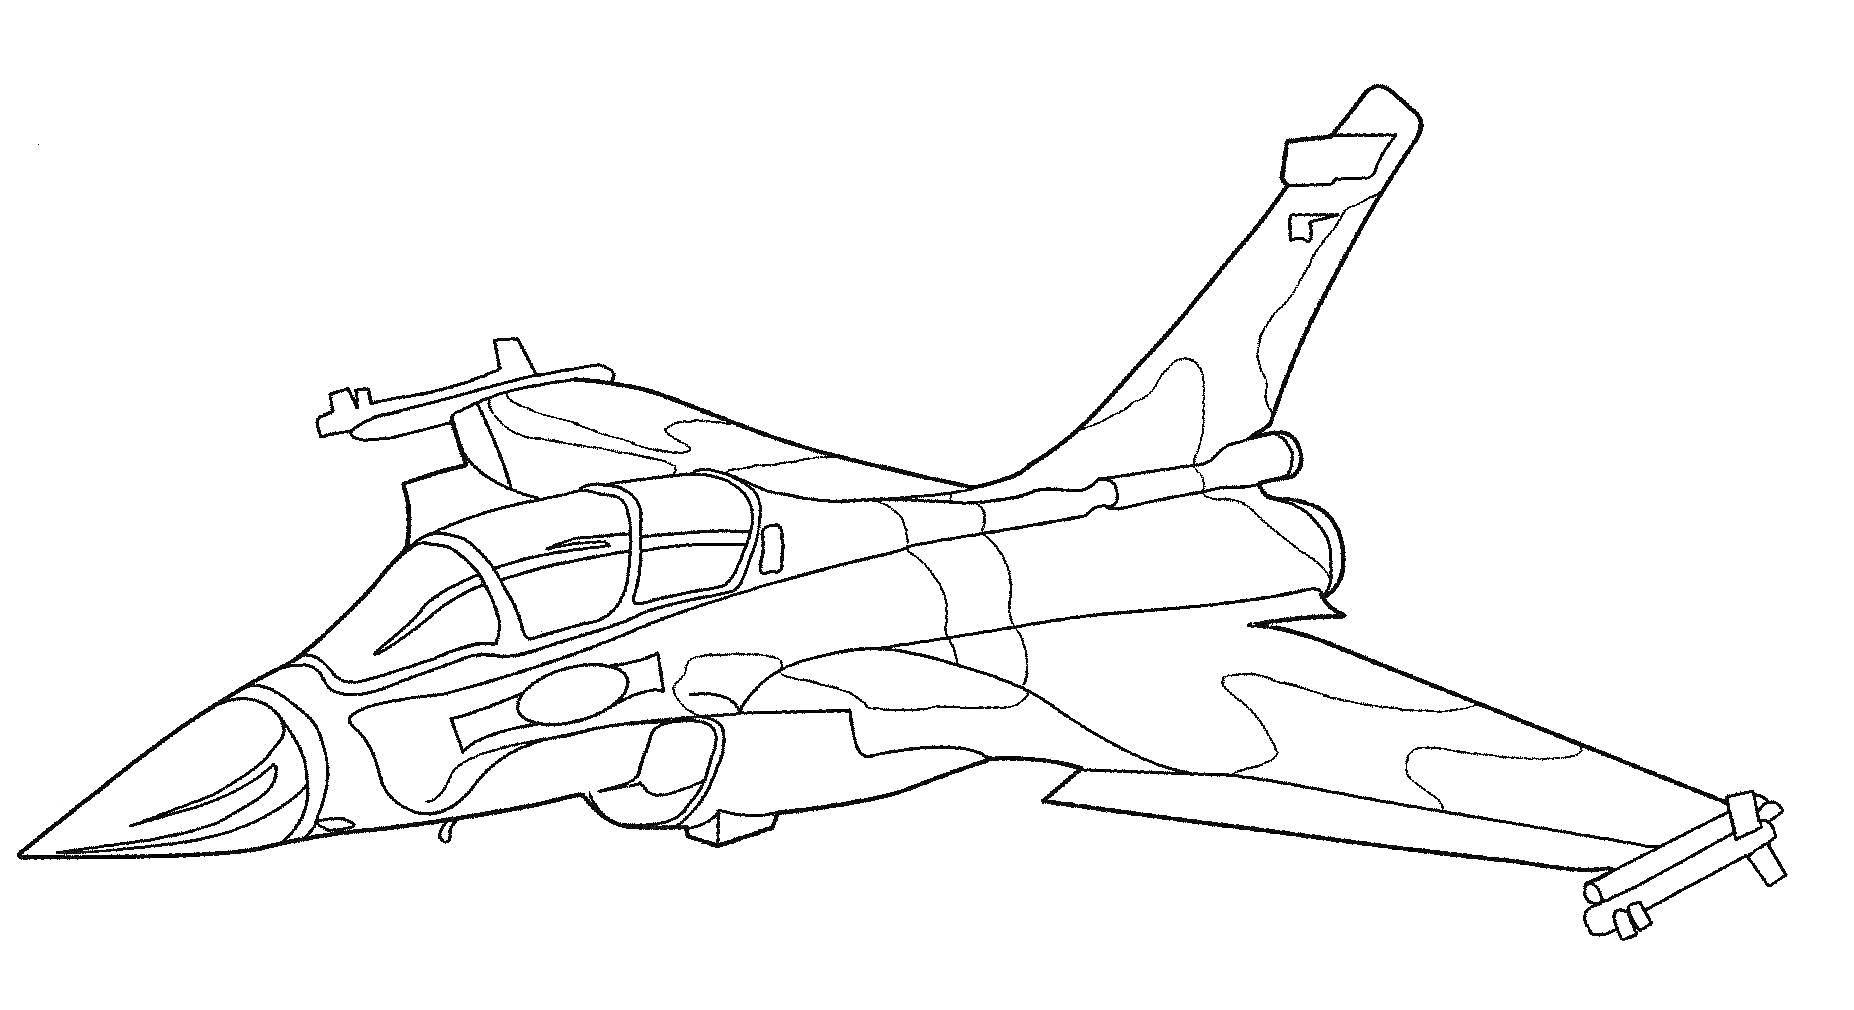 Военный самолет с двумя крыльями, кабиной пилота, носовым конусом и вертикальным хвостовым оперением